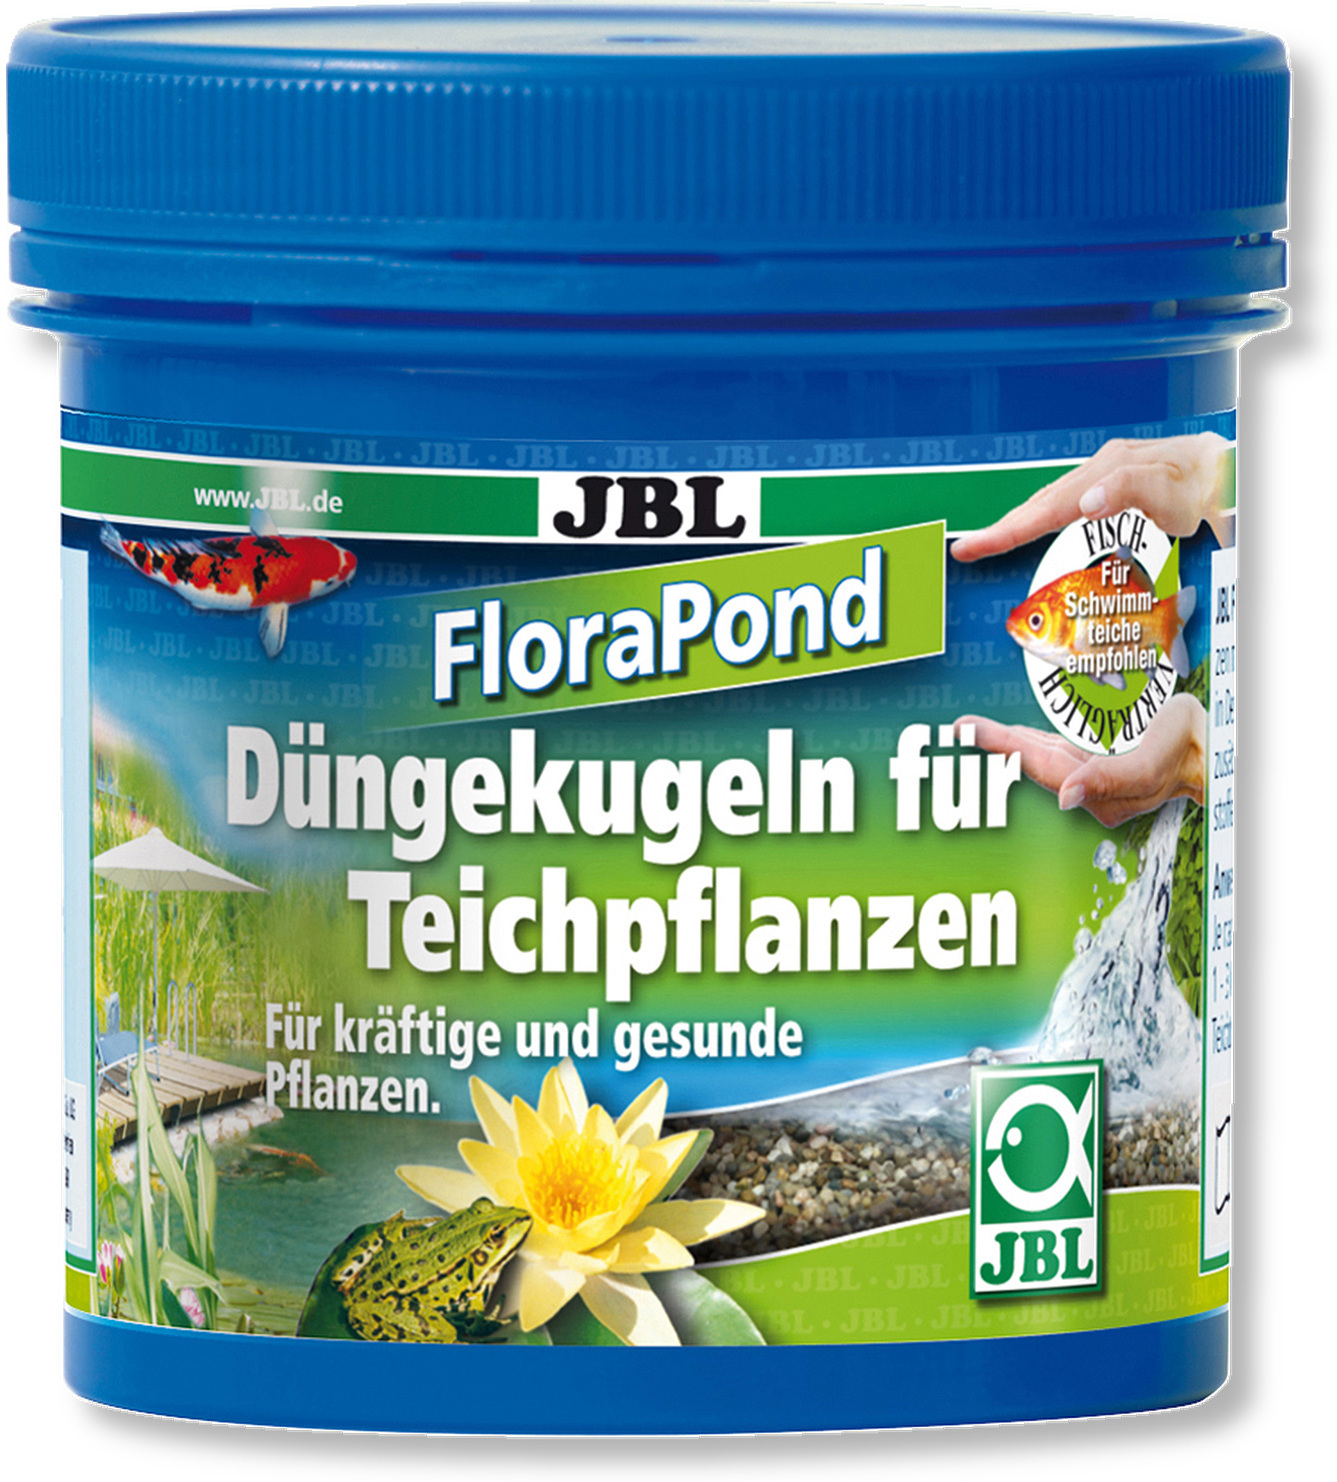 JBL FloraPond bile de îngrășămînt pentru plante de iaz